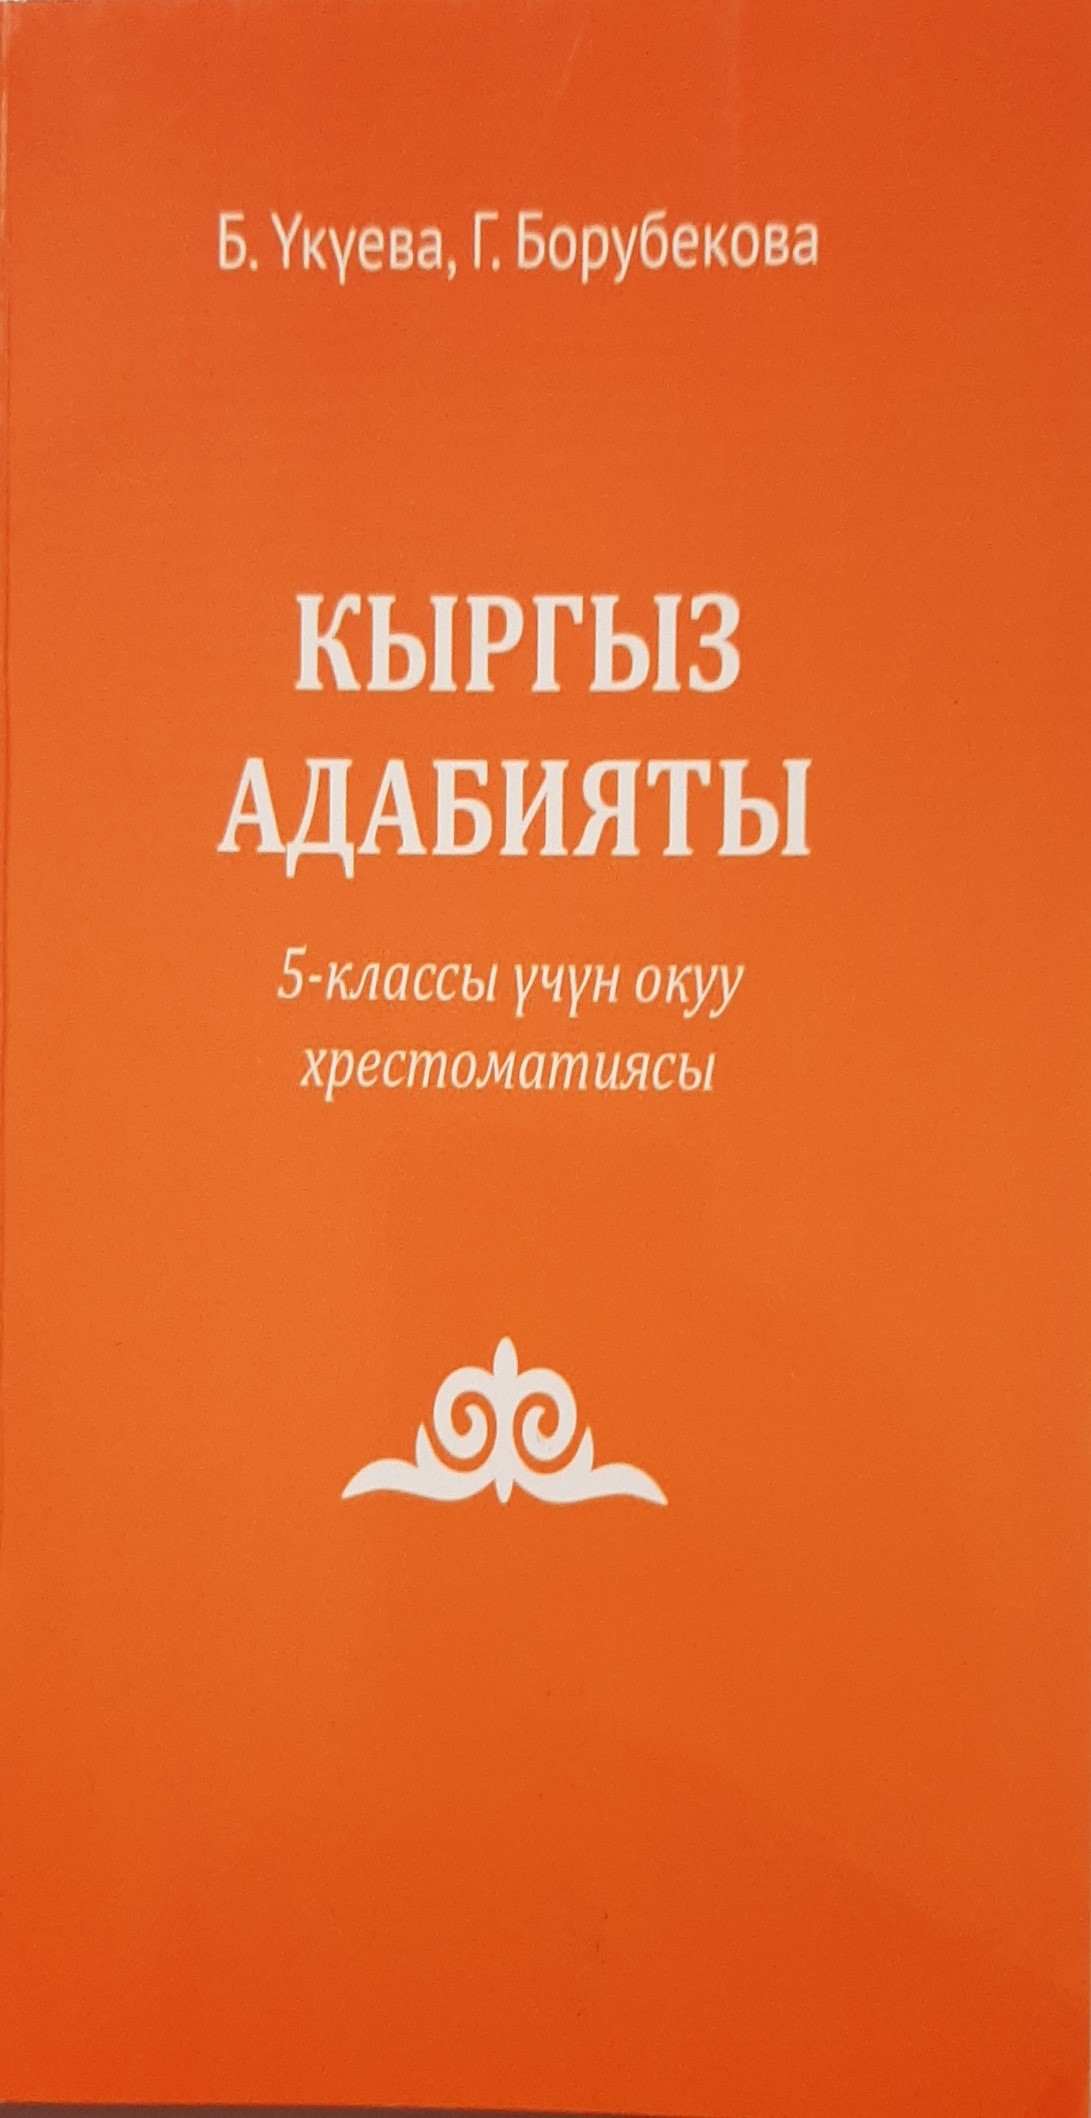 Кыргызская литература: Дополнительная хрестоматия  для 5 класса школ с кыргызским и узбекским языками обучения